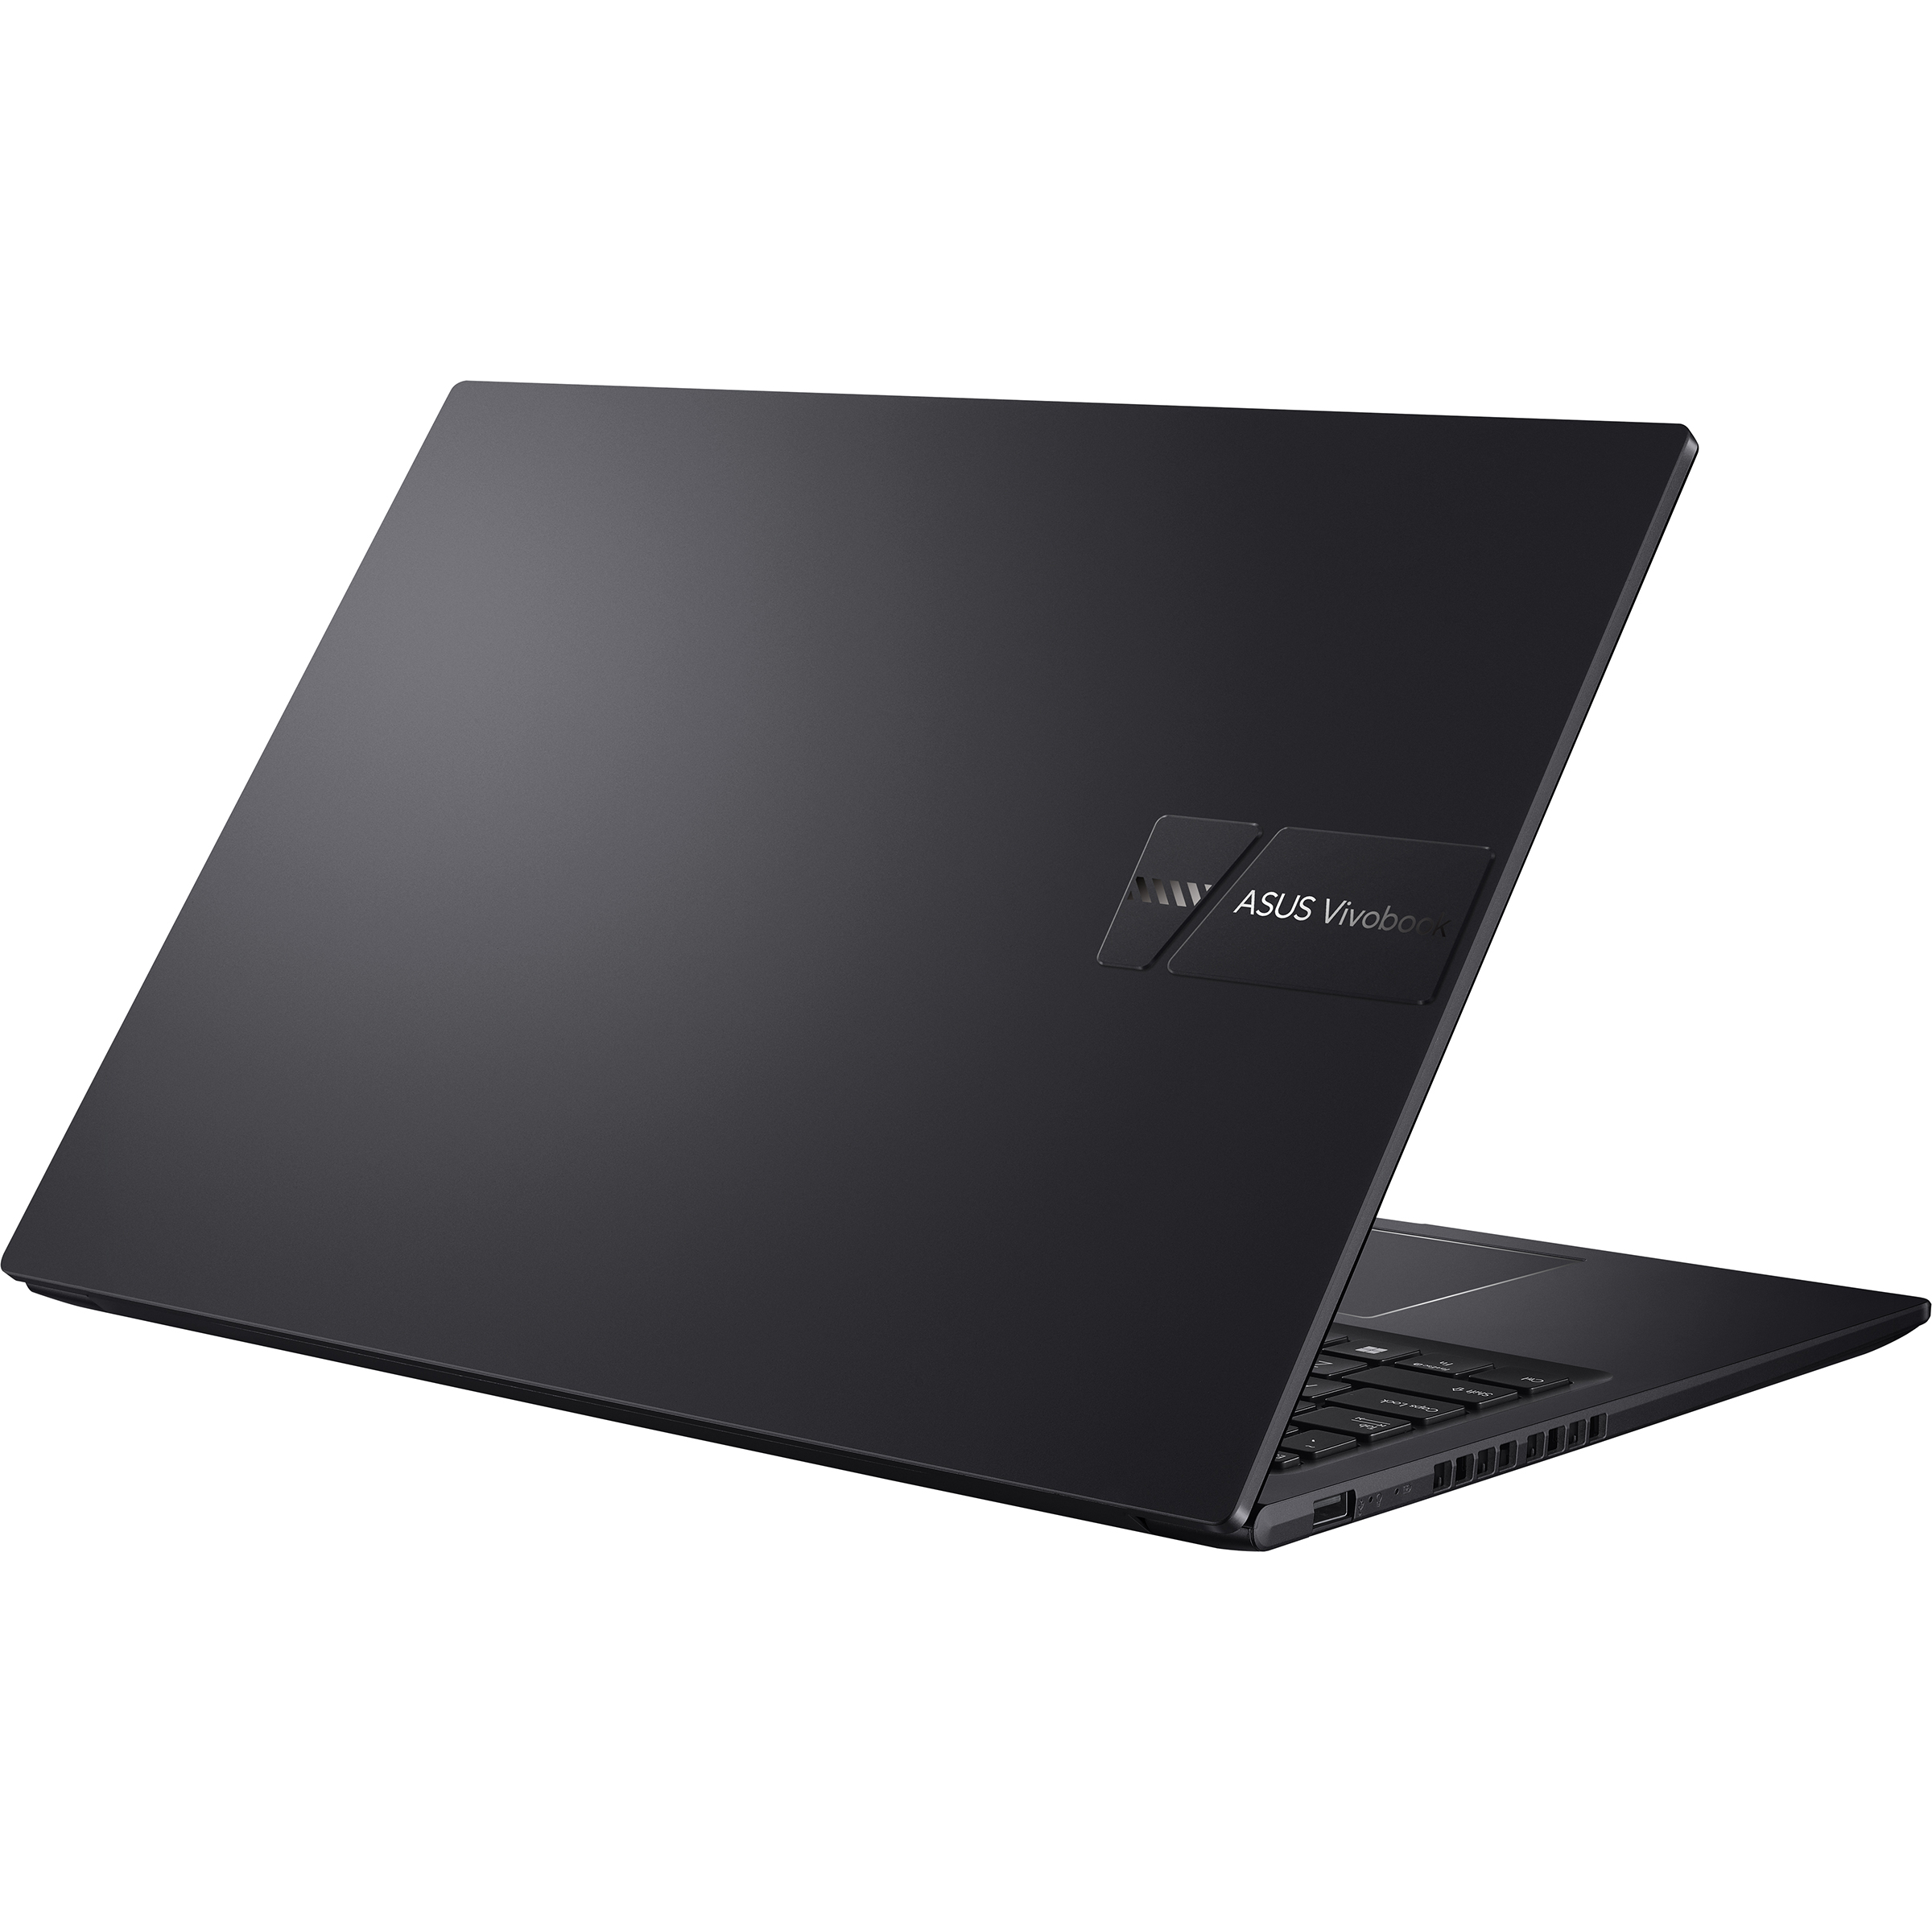 HP , Display, RAM, 500 SSD, fertig mit Notebook Zoll M-Serie installiert Black und aktiviert, Indie GB 16 Vivobook GB 24